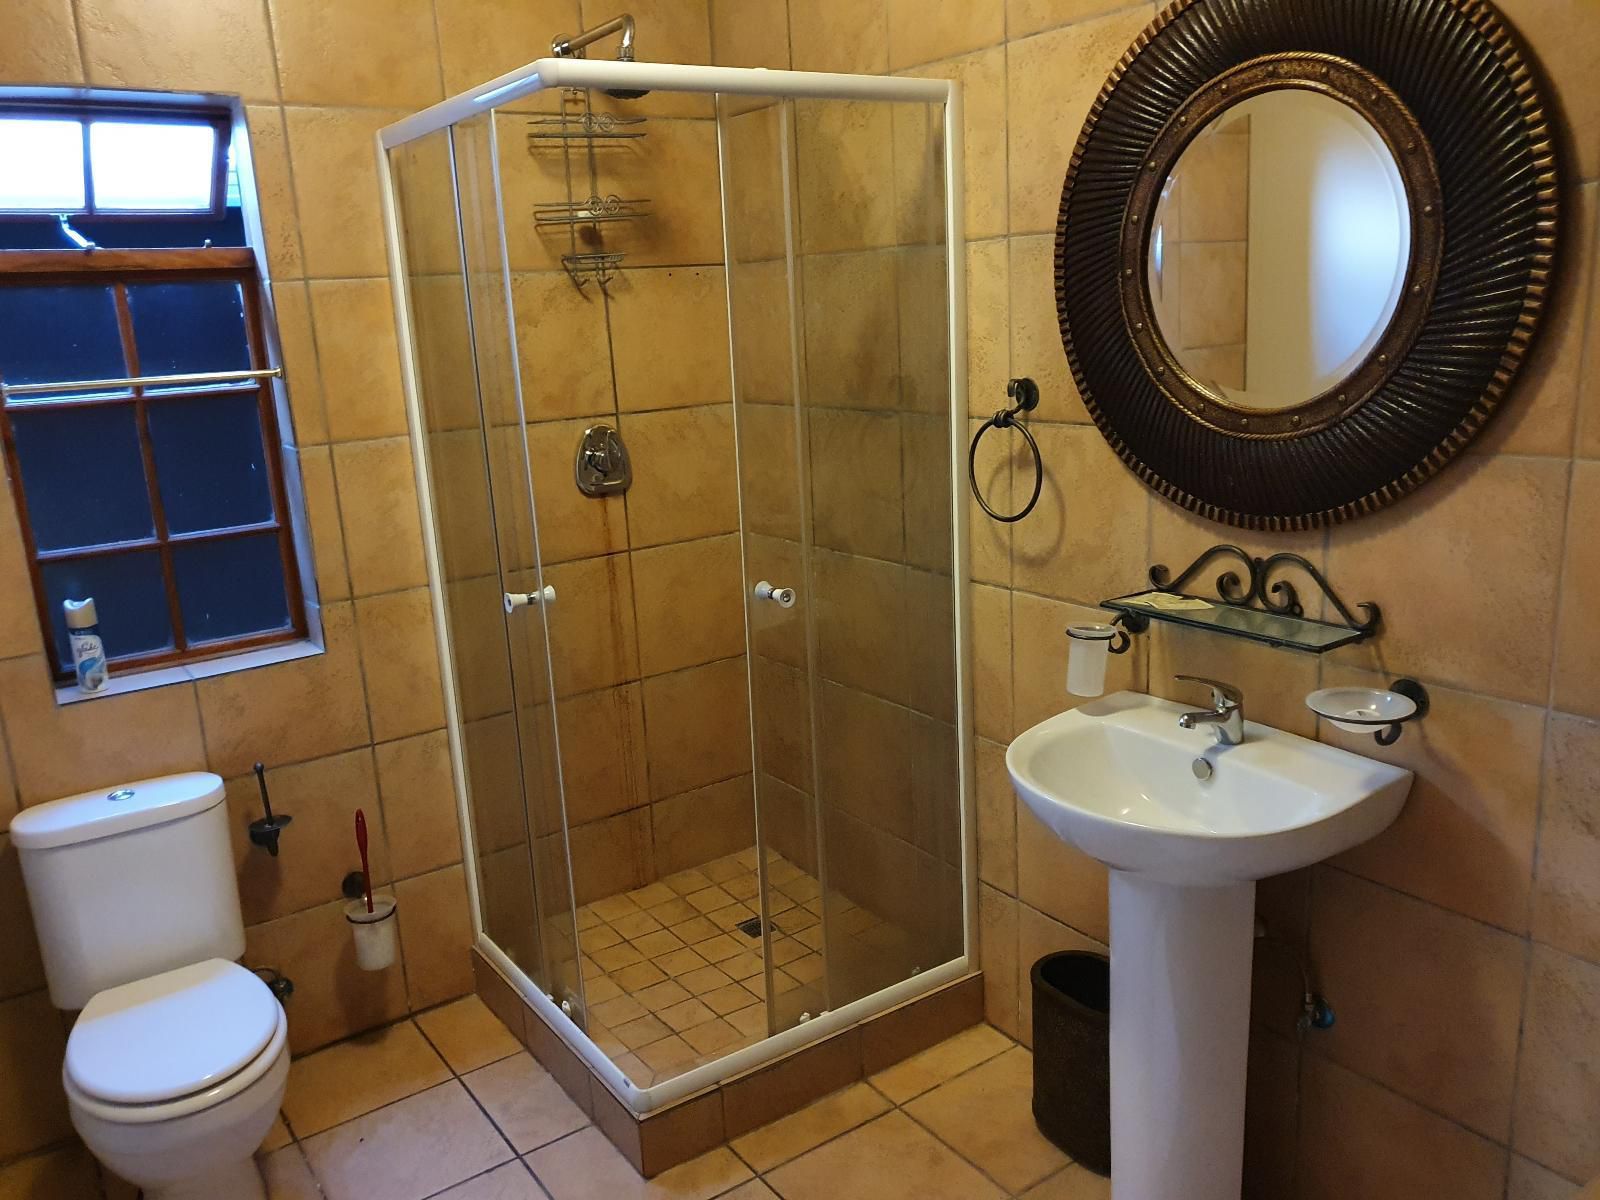 7Th Street Guesthouse Melville Johannesburg Gauteng South Africa Bathroom